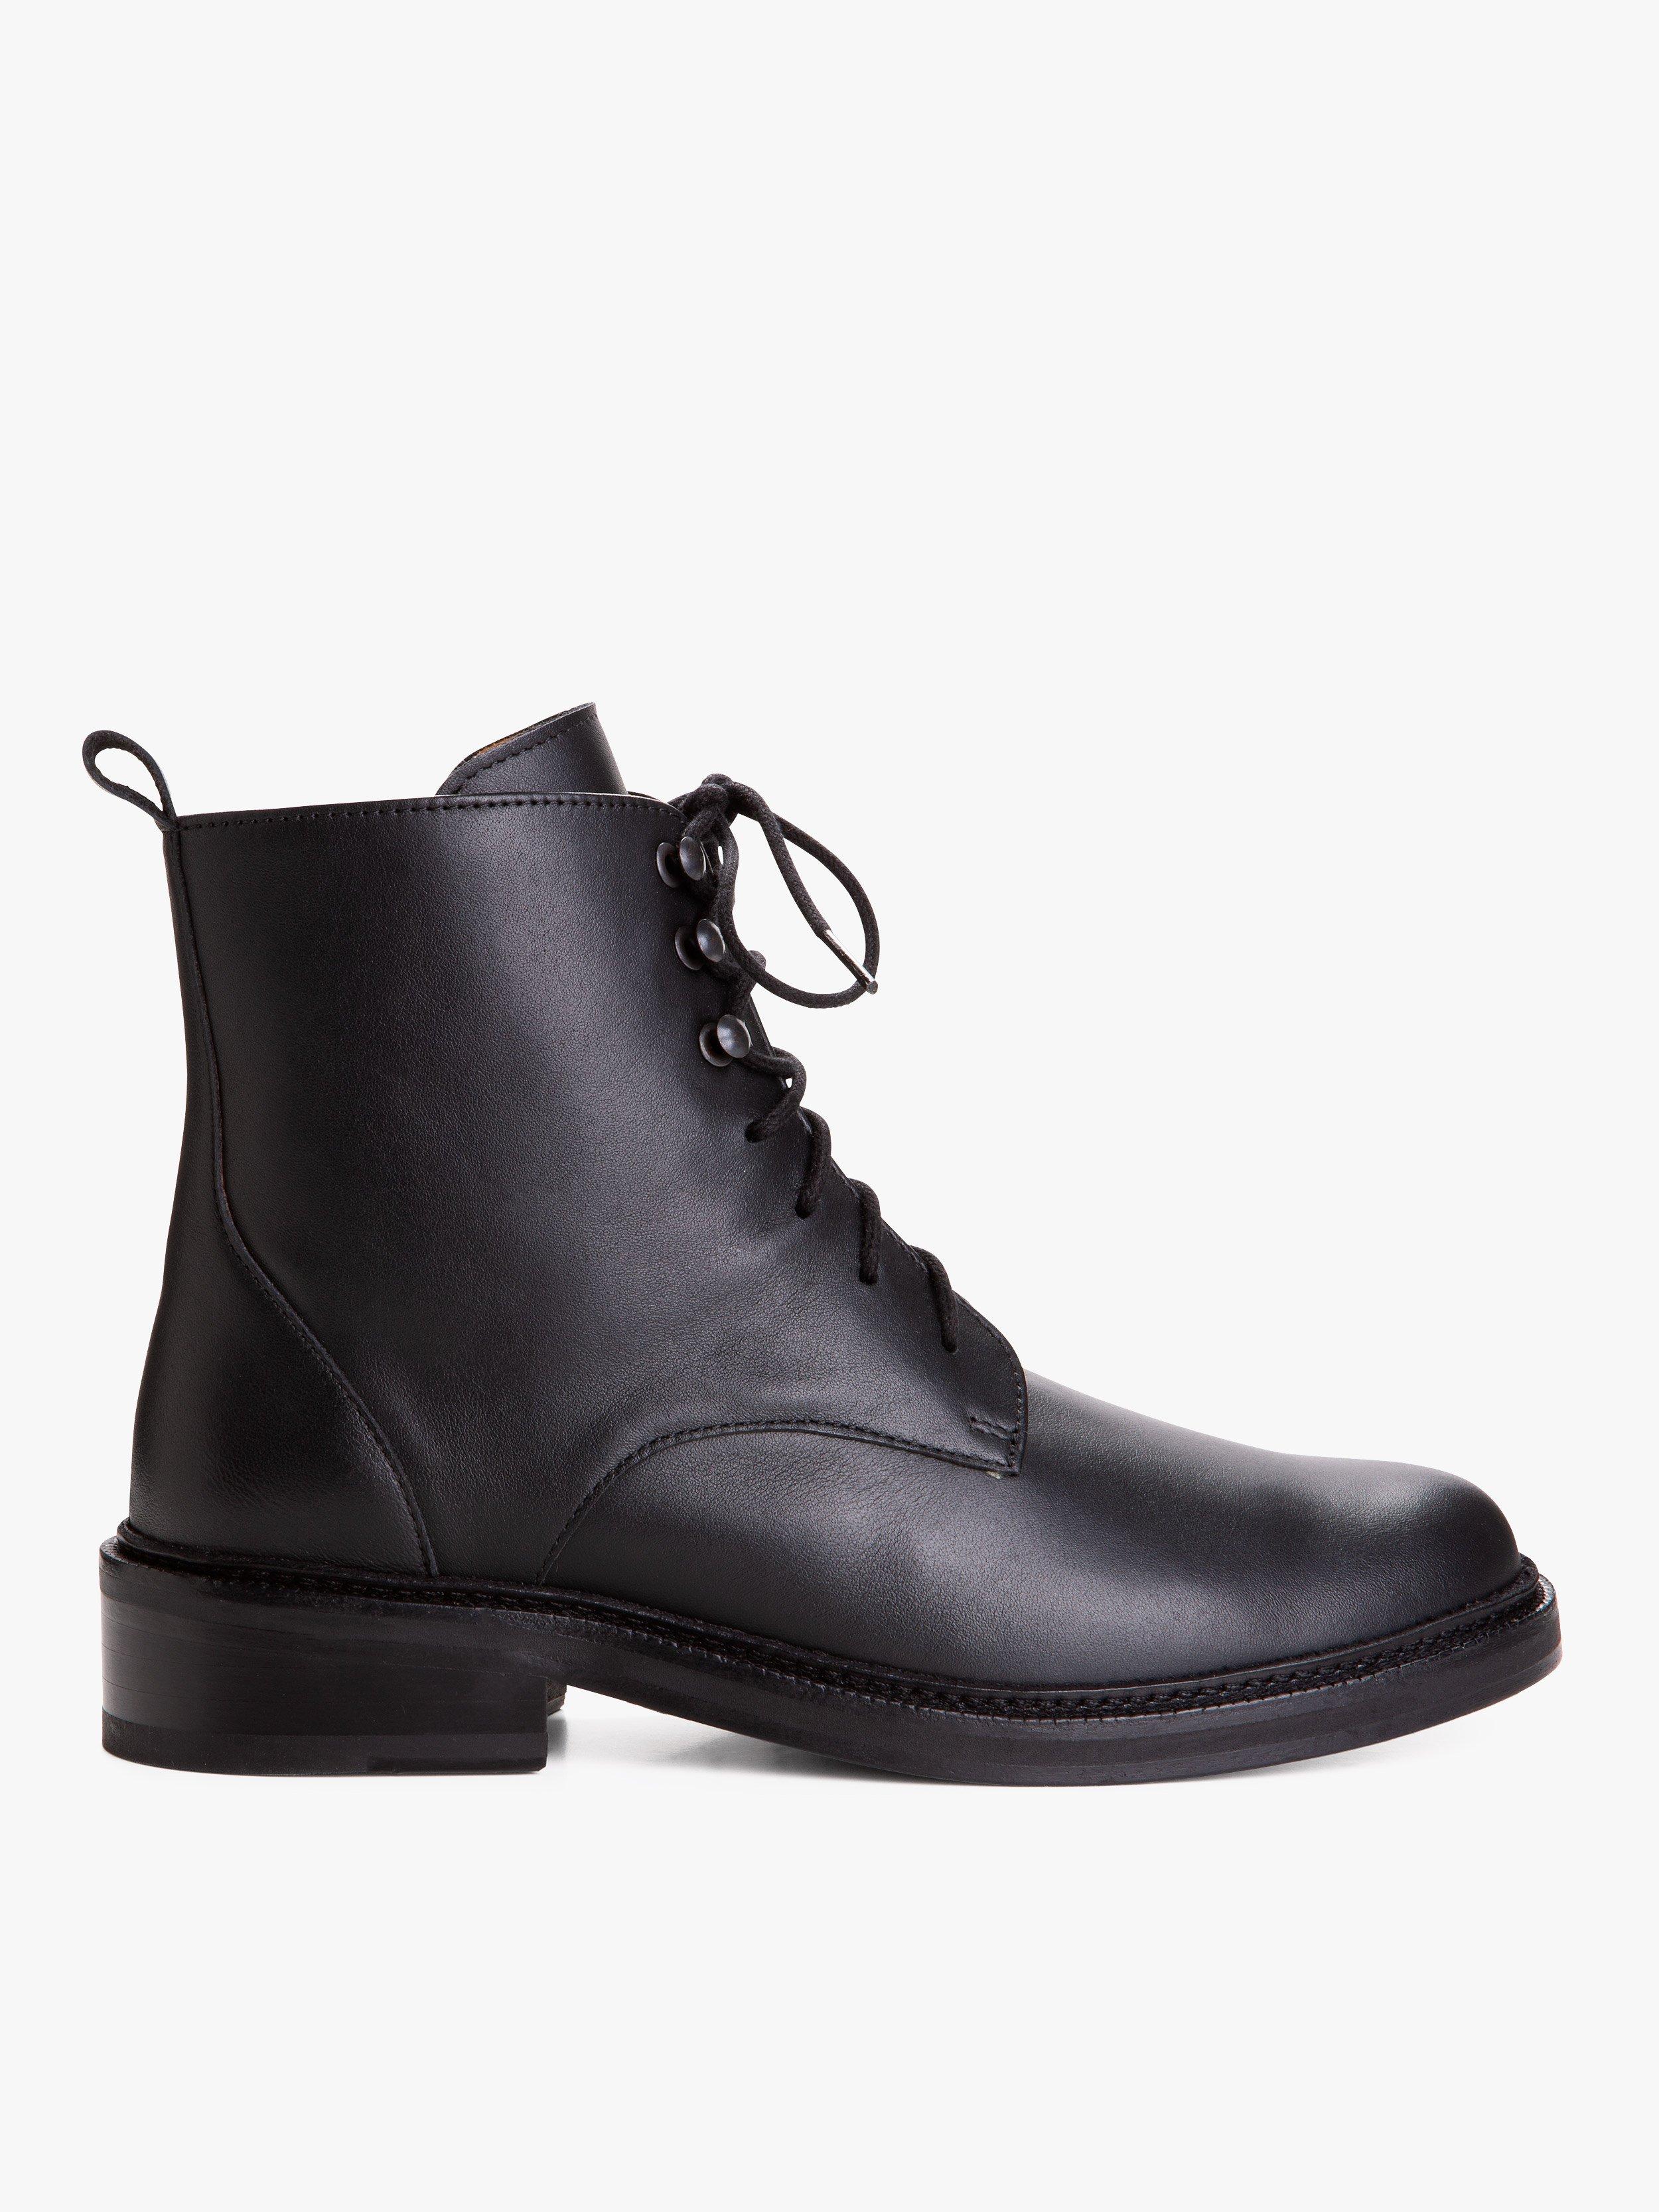 agnès b. Black Leather Zoe Ankle Boots | Lyst